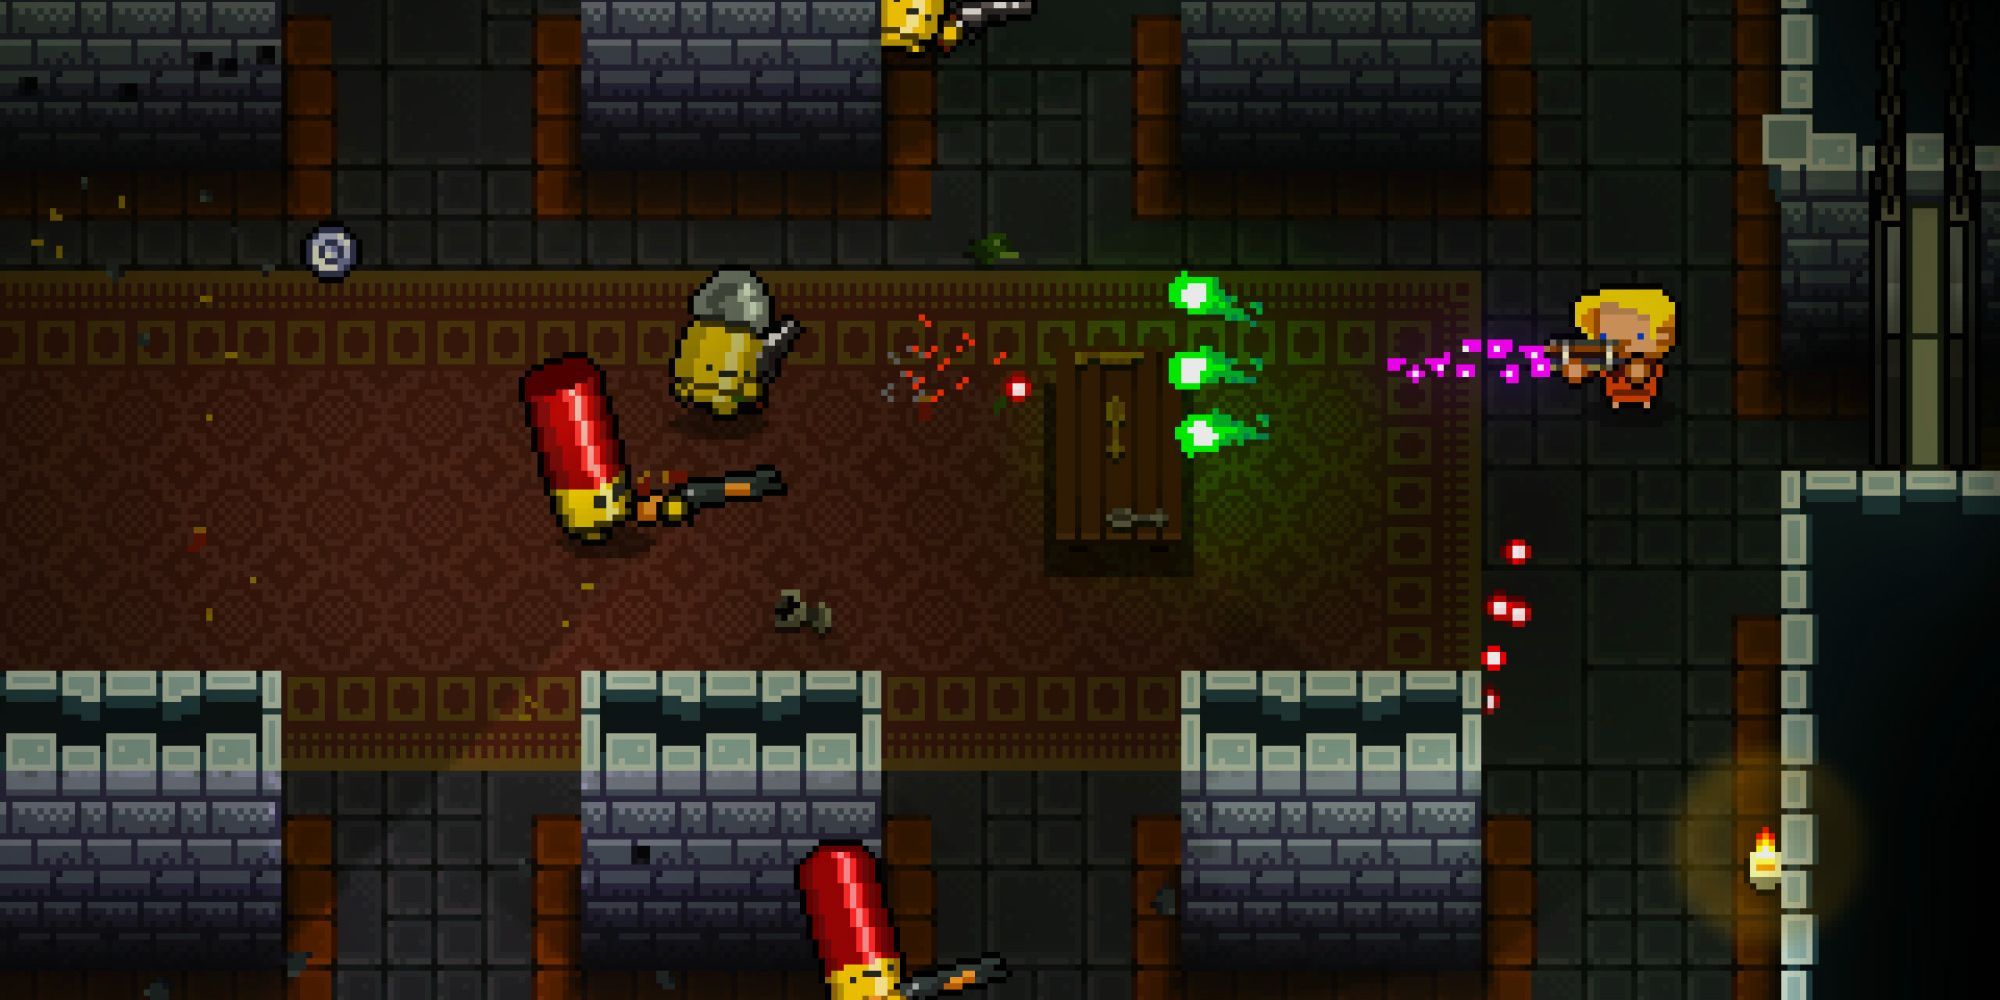 Imagem do jogo Enter The Gungeon com o personagem do jogador lutando contra inimigos com armas